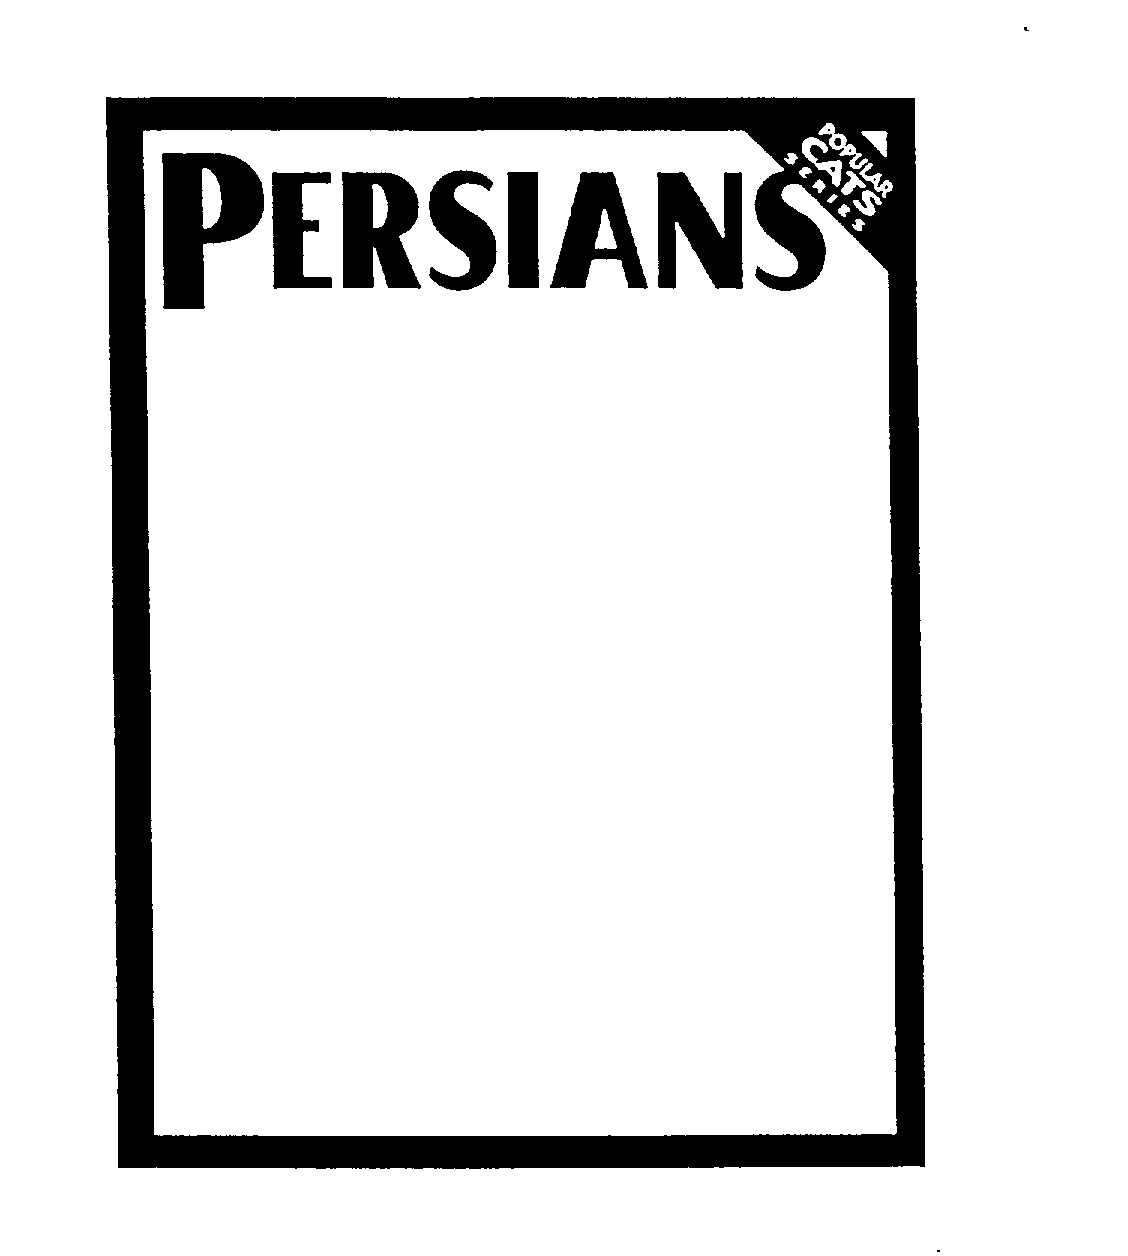  PERSIANS POPULAR CATS SERIES